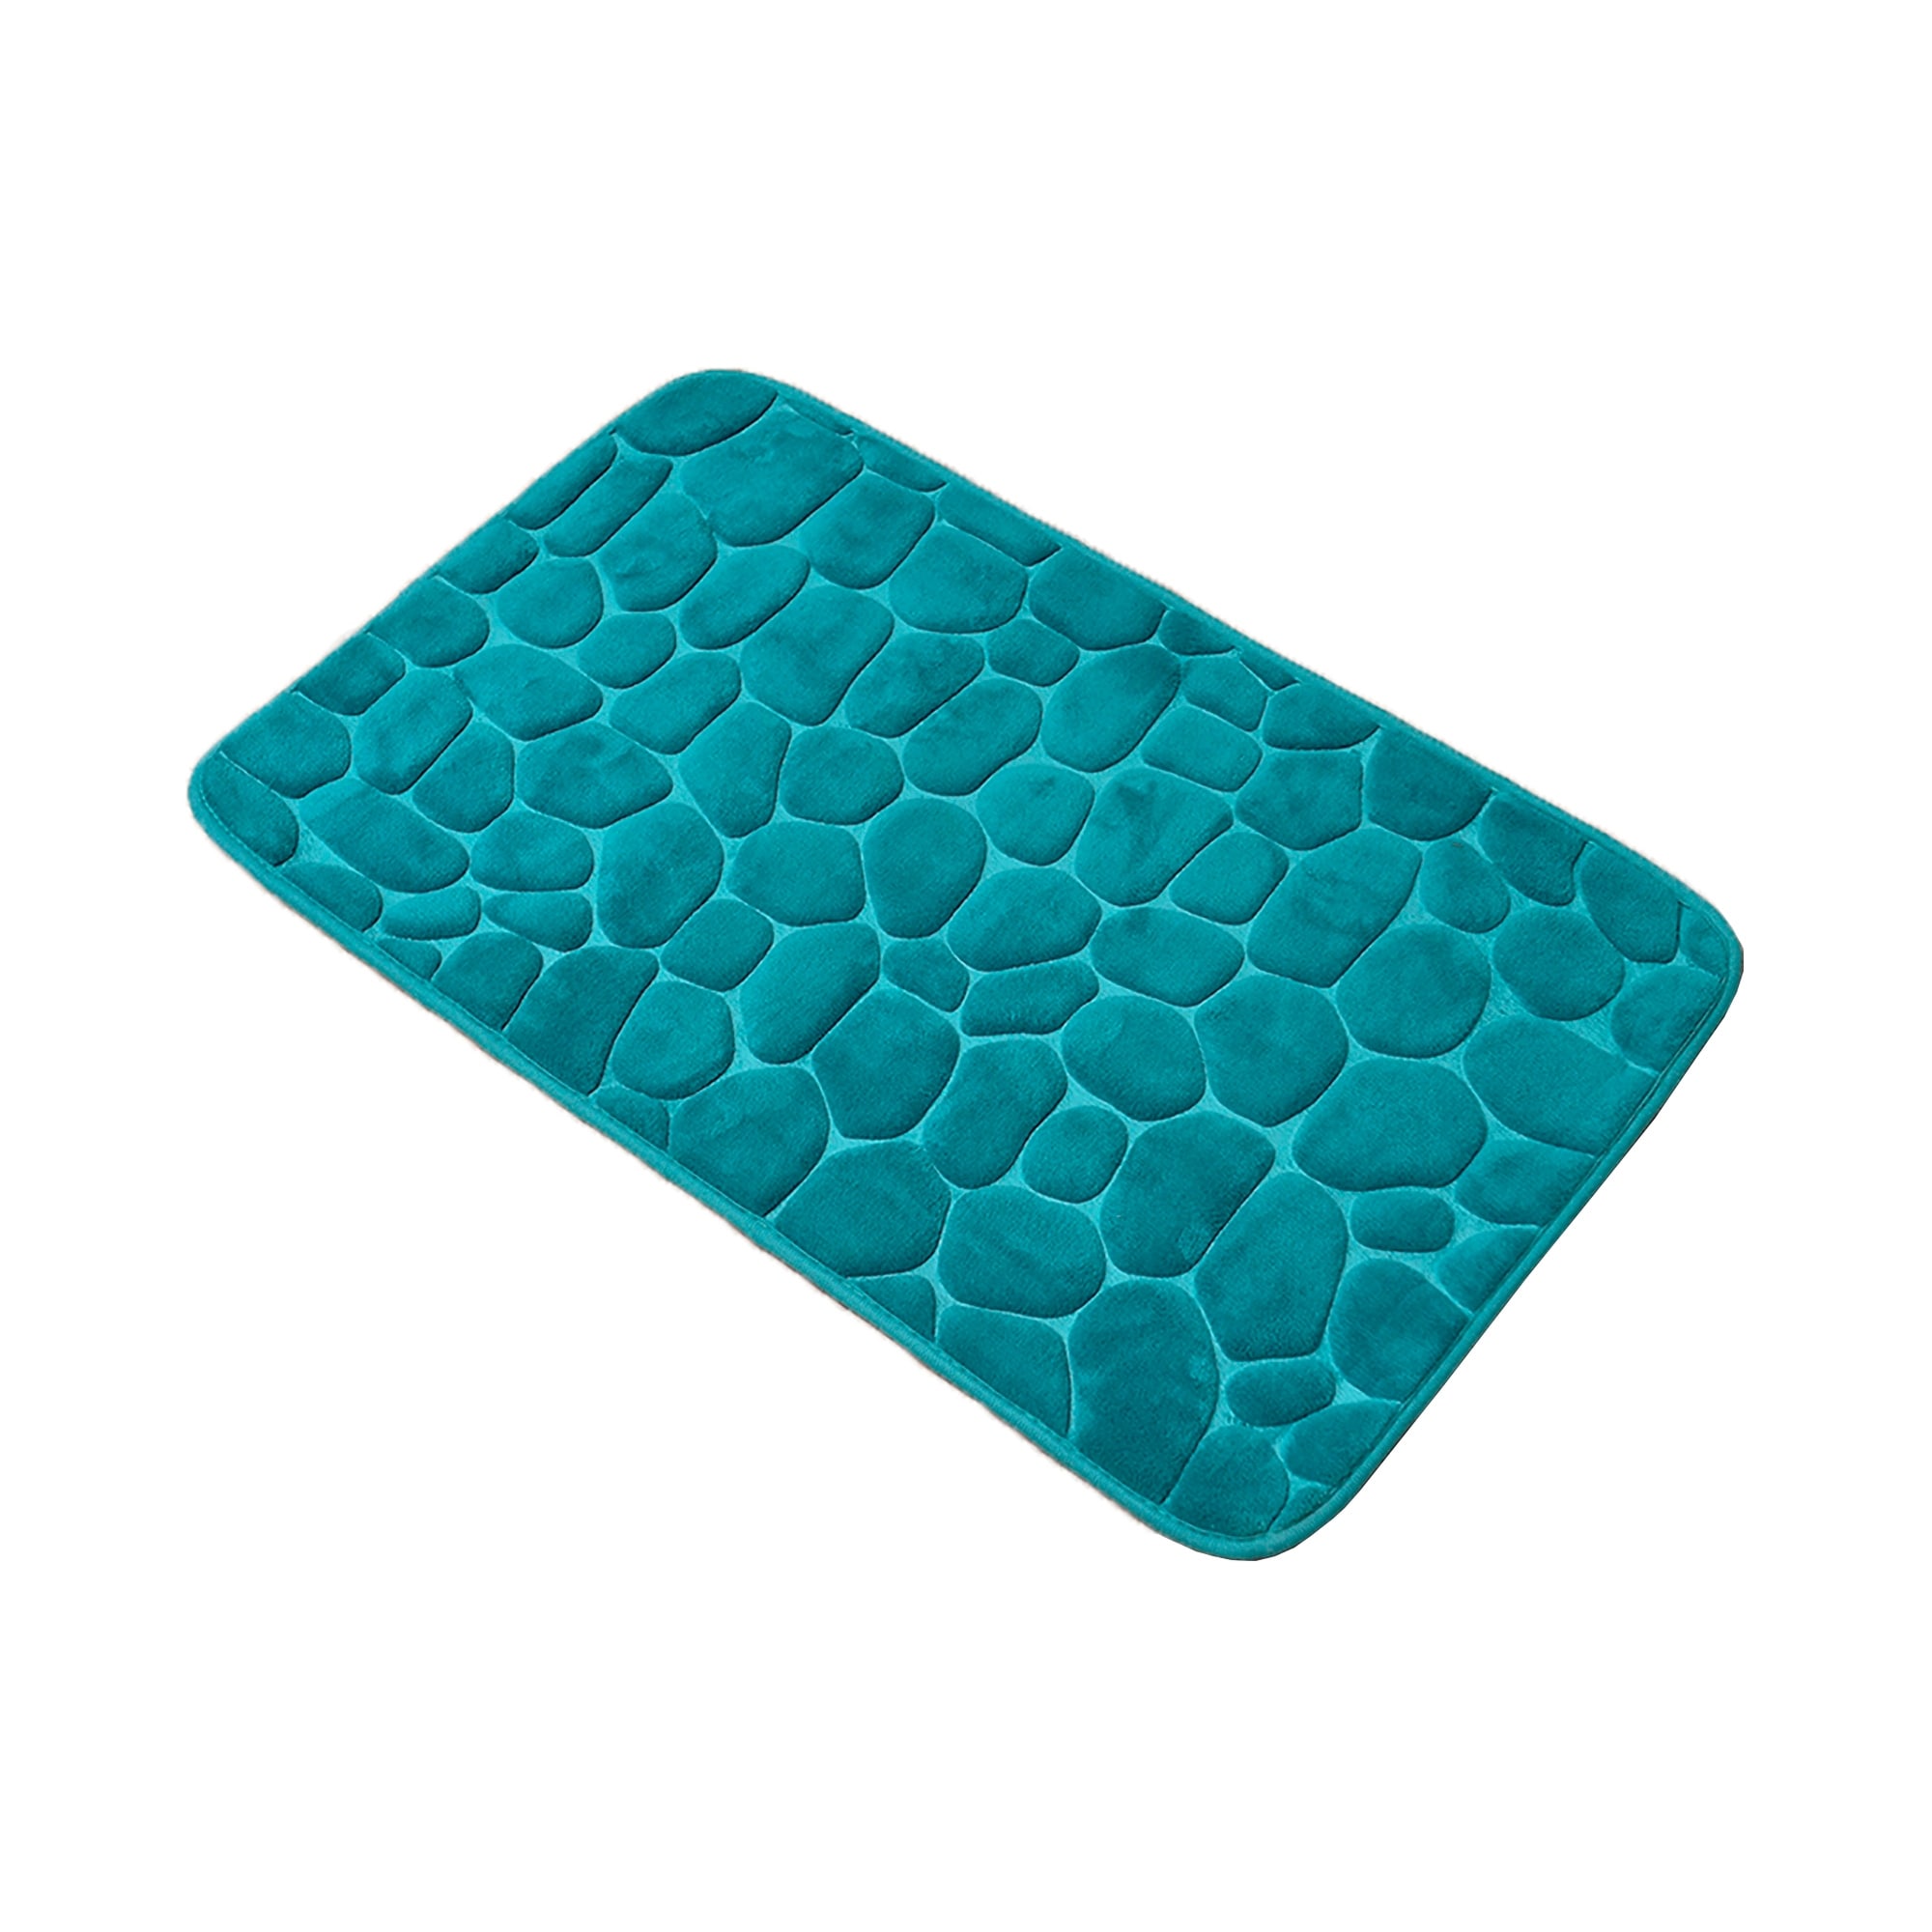 Contour Bath Rug Memory Foam Mat 3D Pebble 20L x 20W - Navy Blue